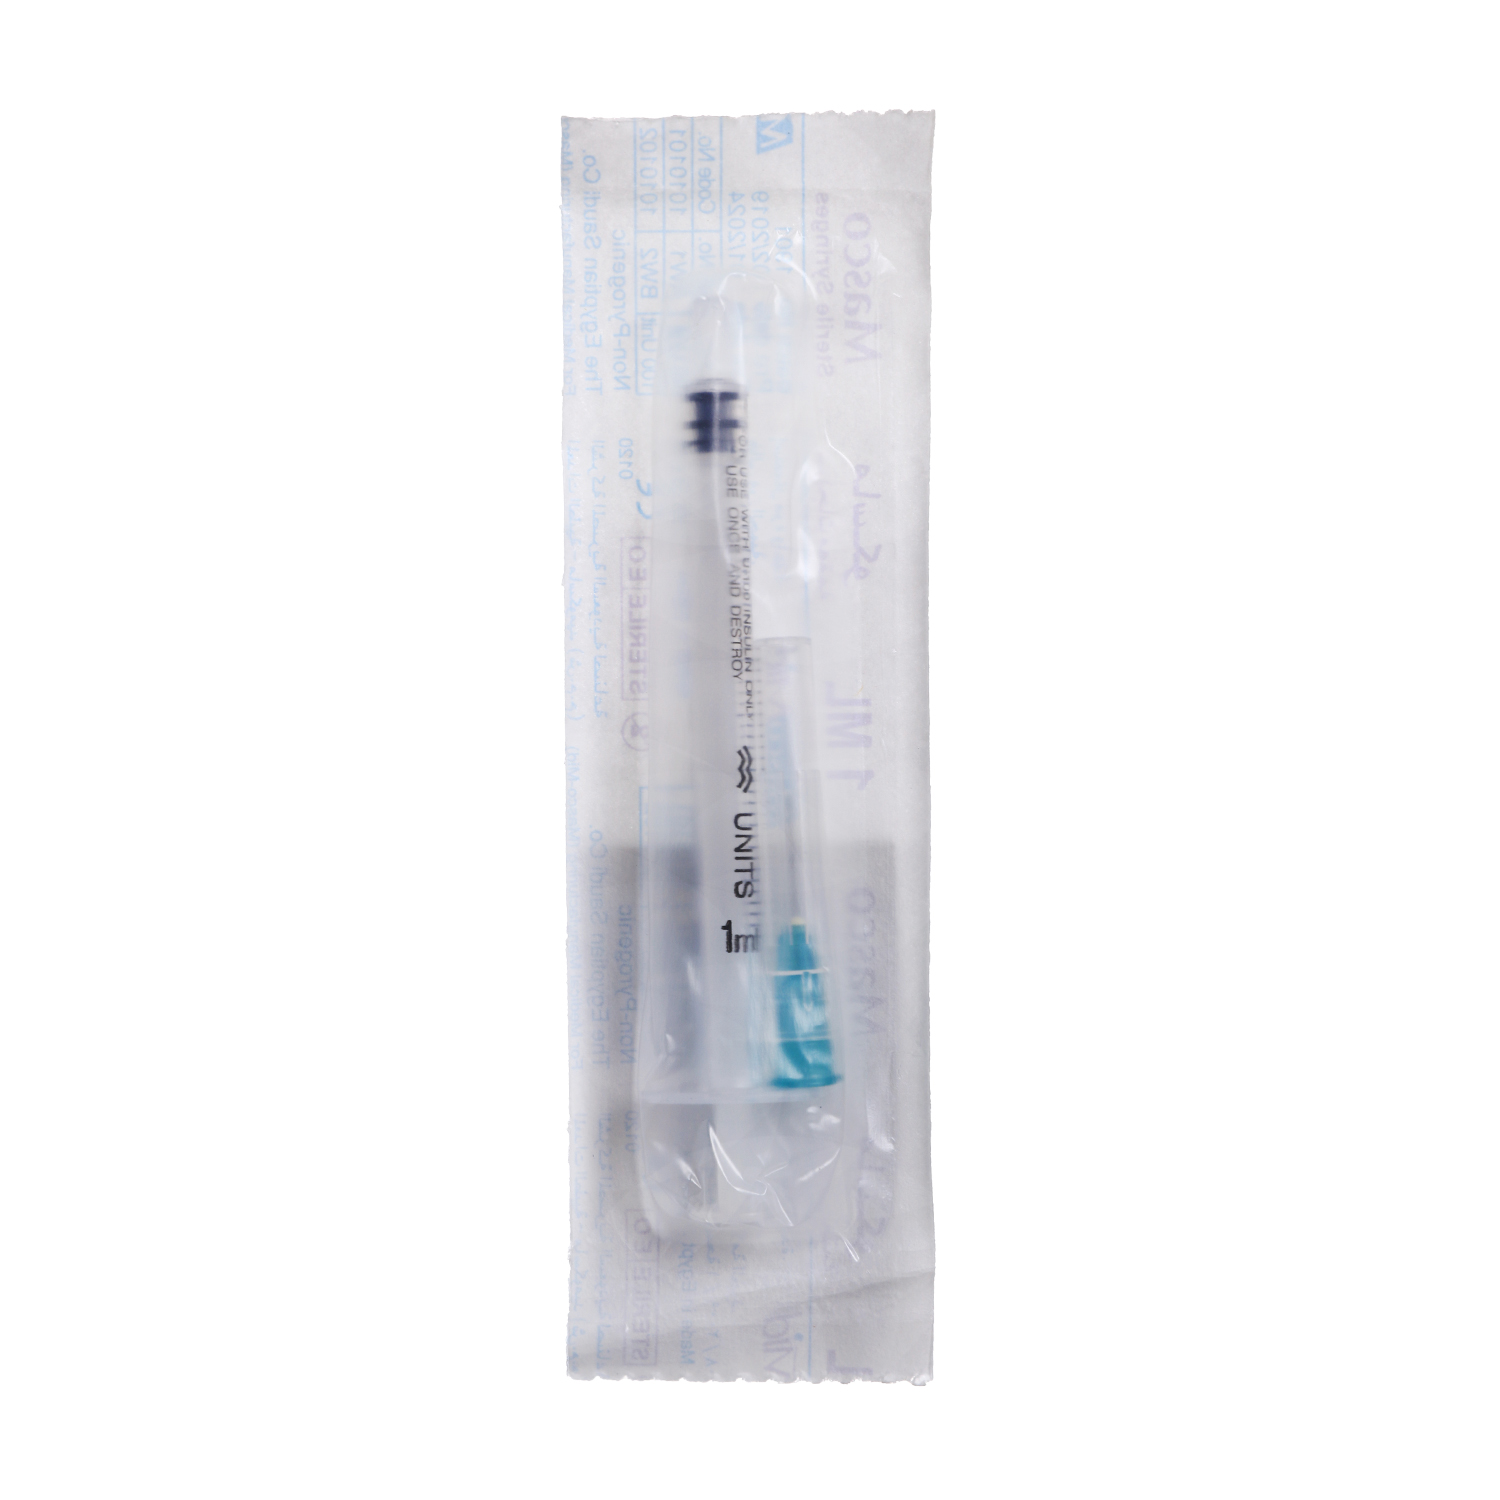 Masco syringe Insulin 1 ml